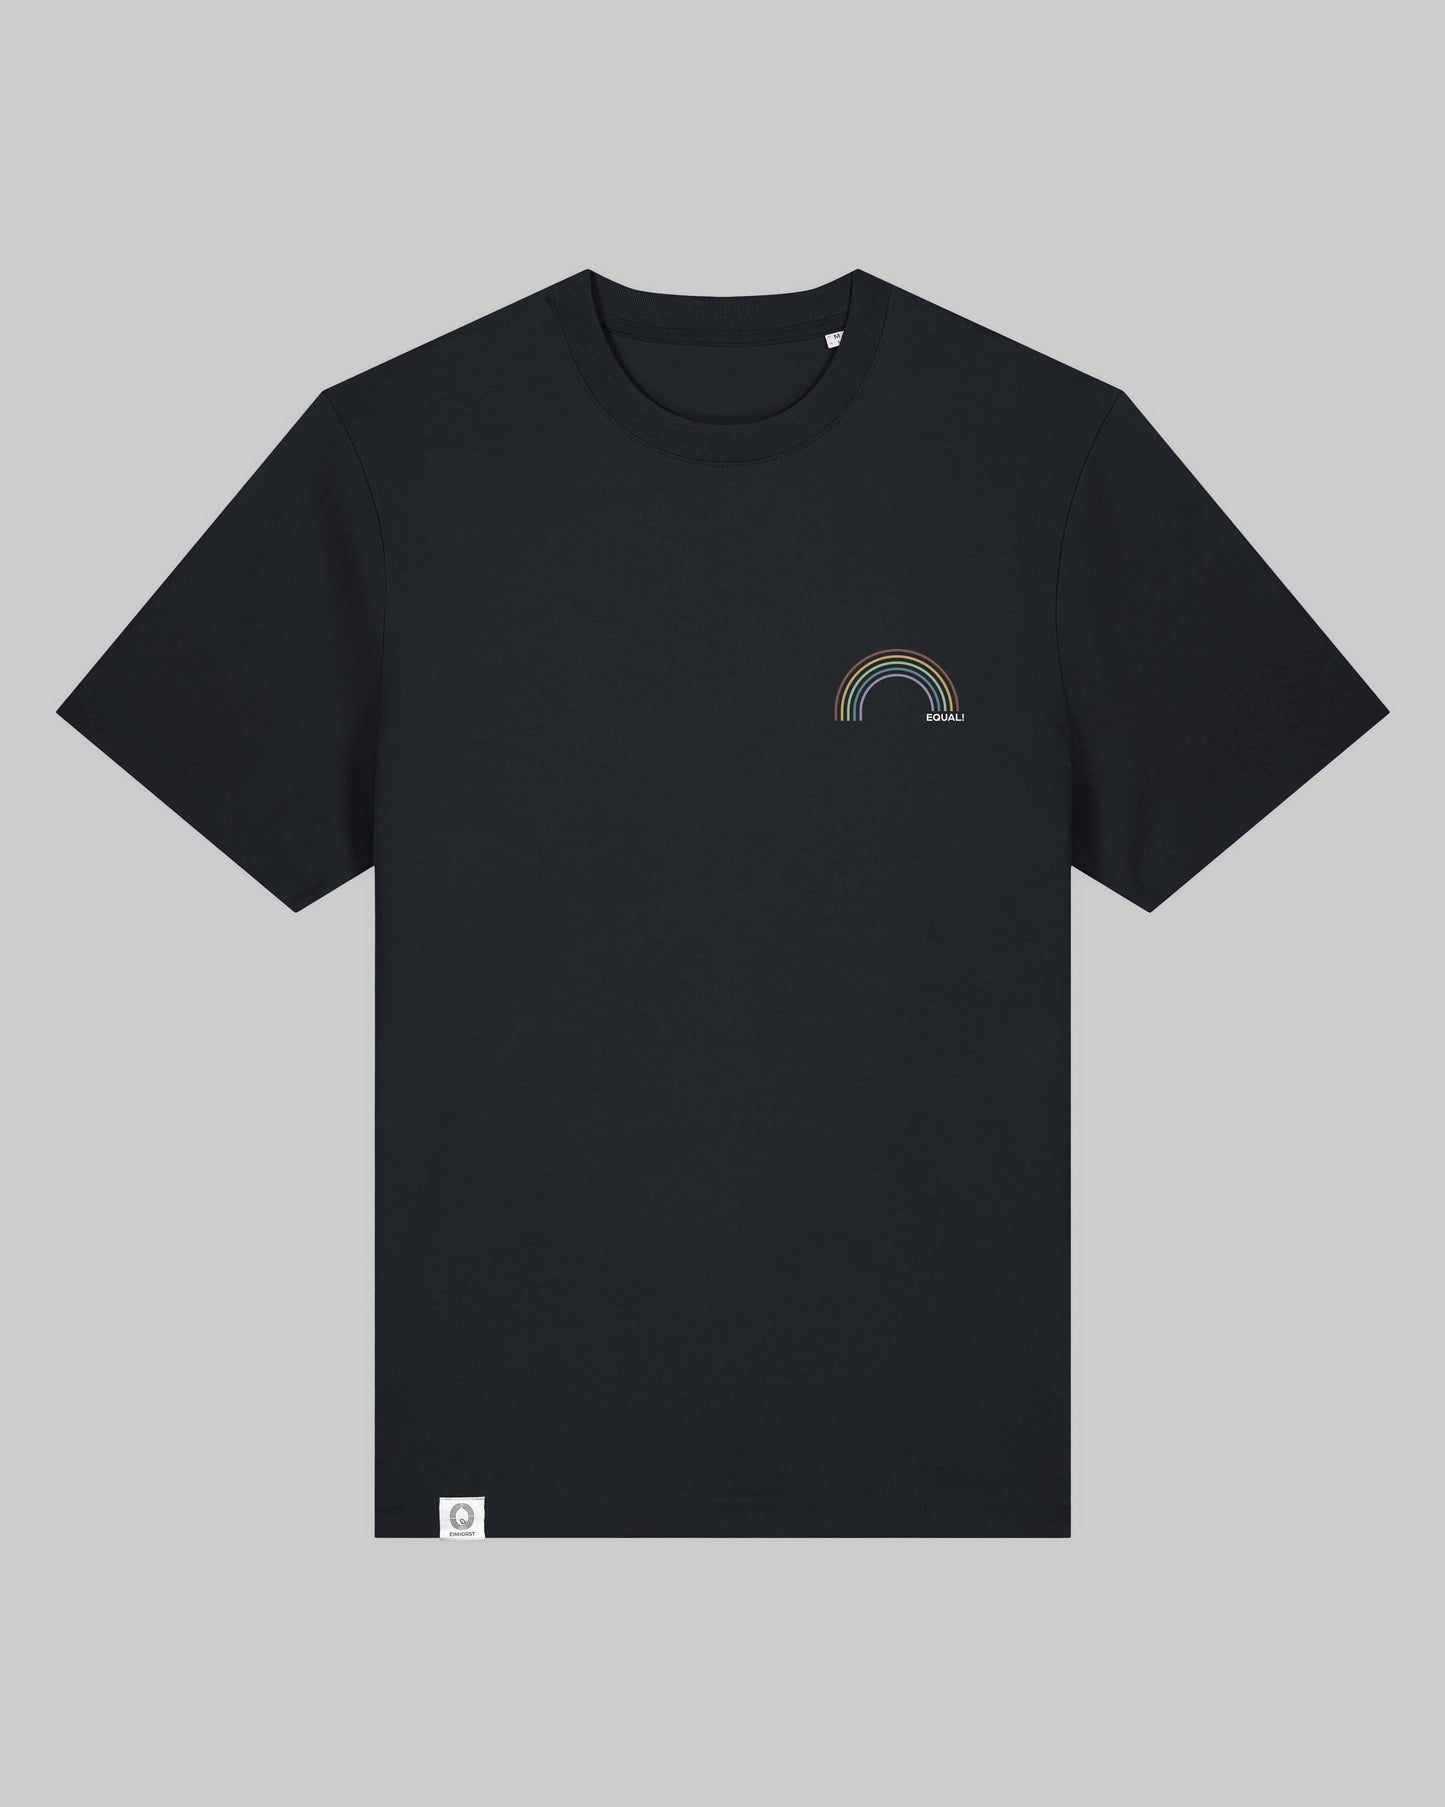 unisex Organic Shirt 2.0 "equal Regenbogen" in 2 verschiedenen Farben und insgesamt 6 verschiedenen Varianten